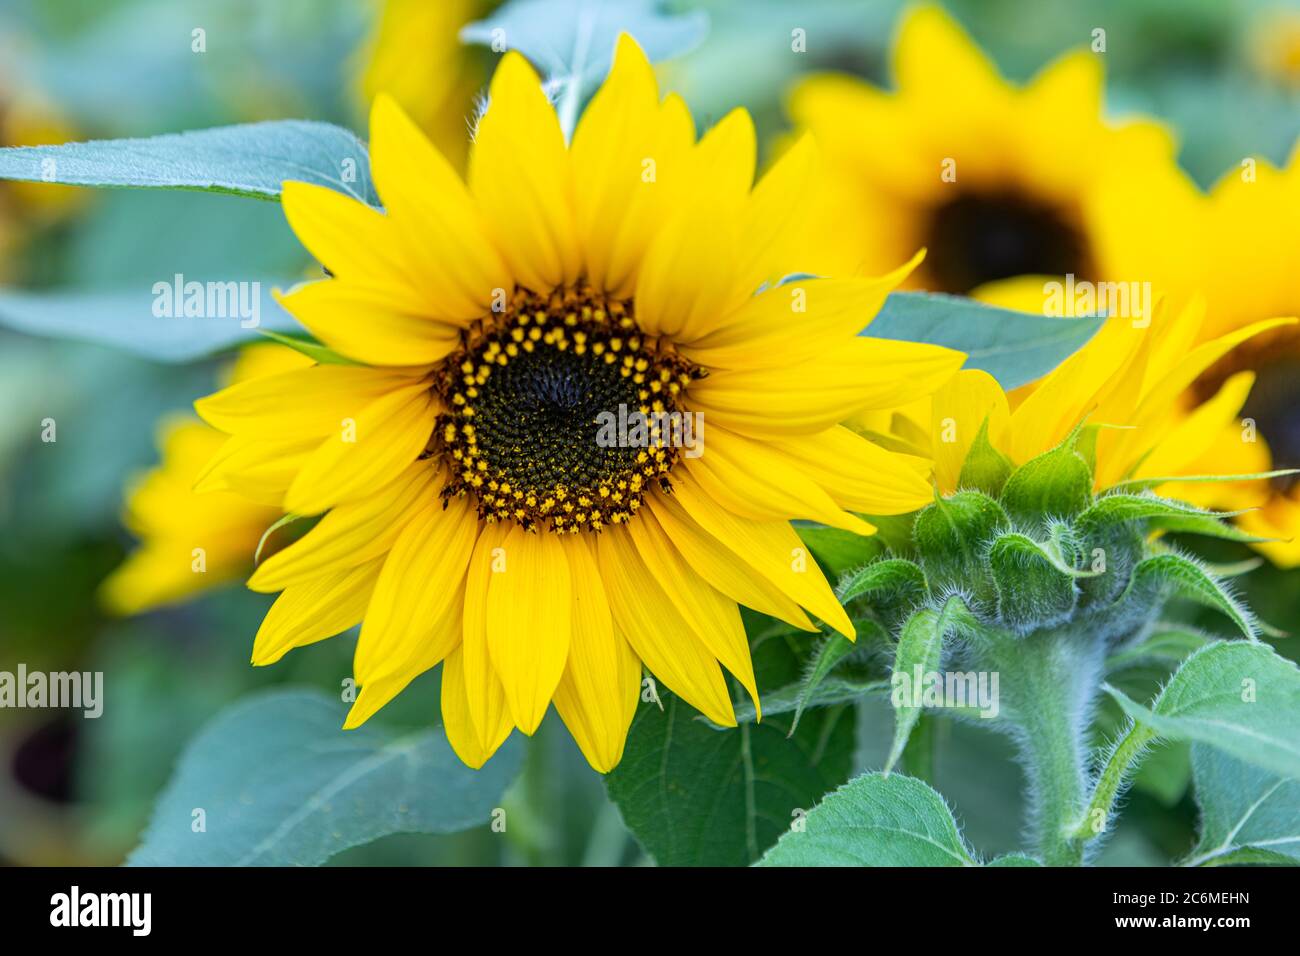 Sonnenblume mit grünen Bud Sonnenblumenblüte. Gesunde Lebensstile, Ökologie, biologischer Landbau, Smallholding, Gartenbau, Gesundheitskonzept, Naturkonzept. Stockfoto